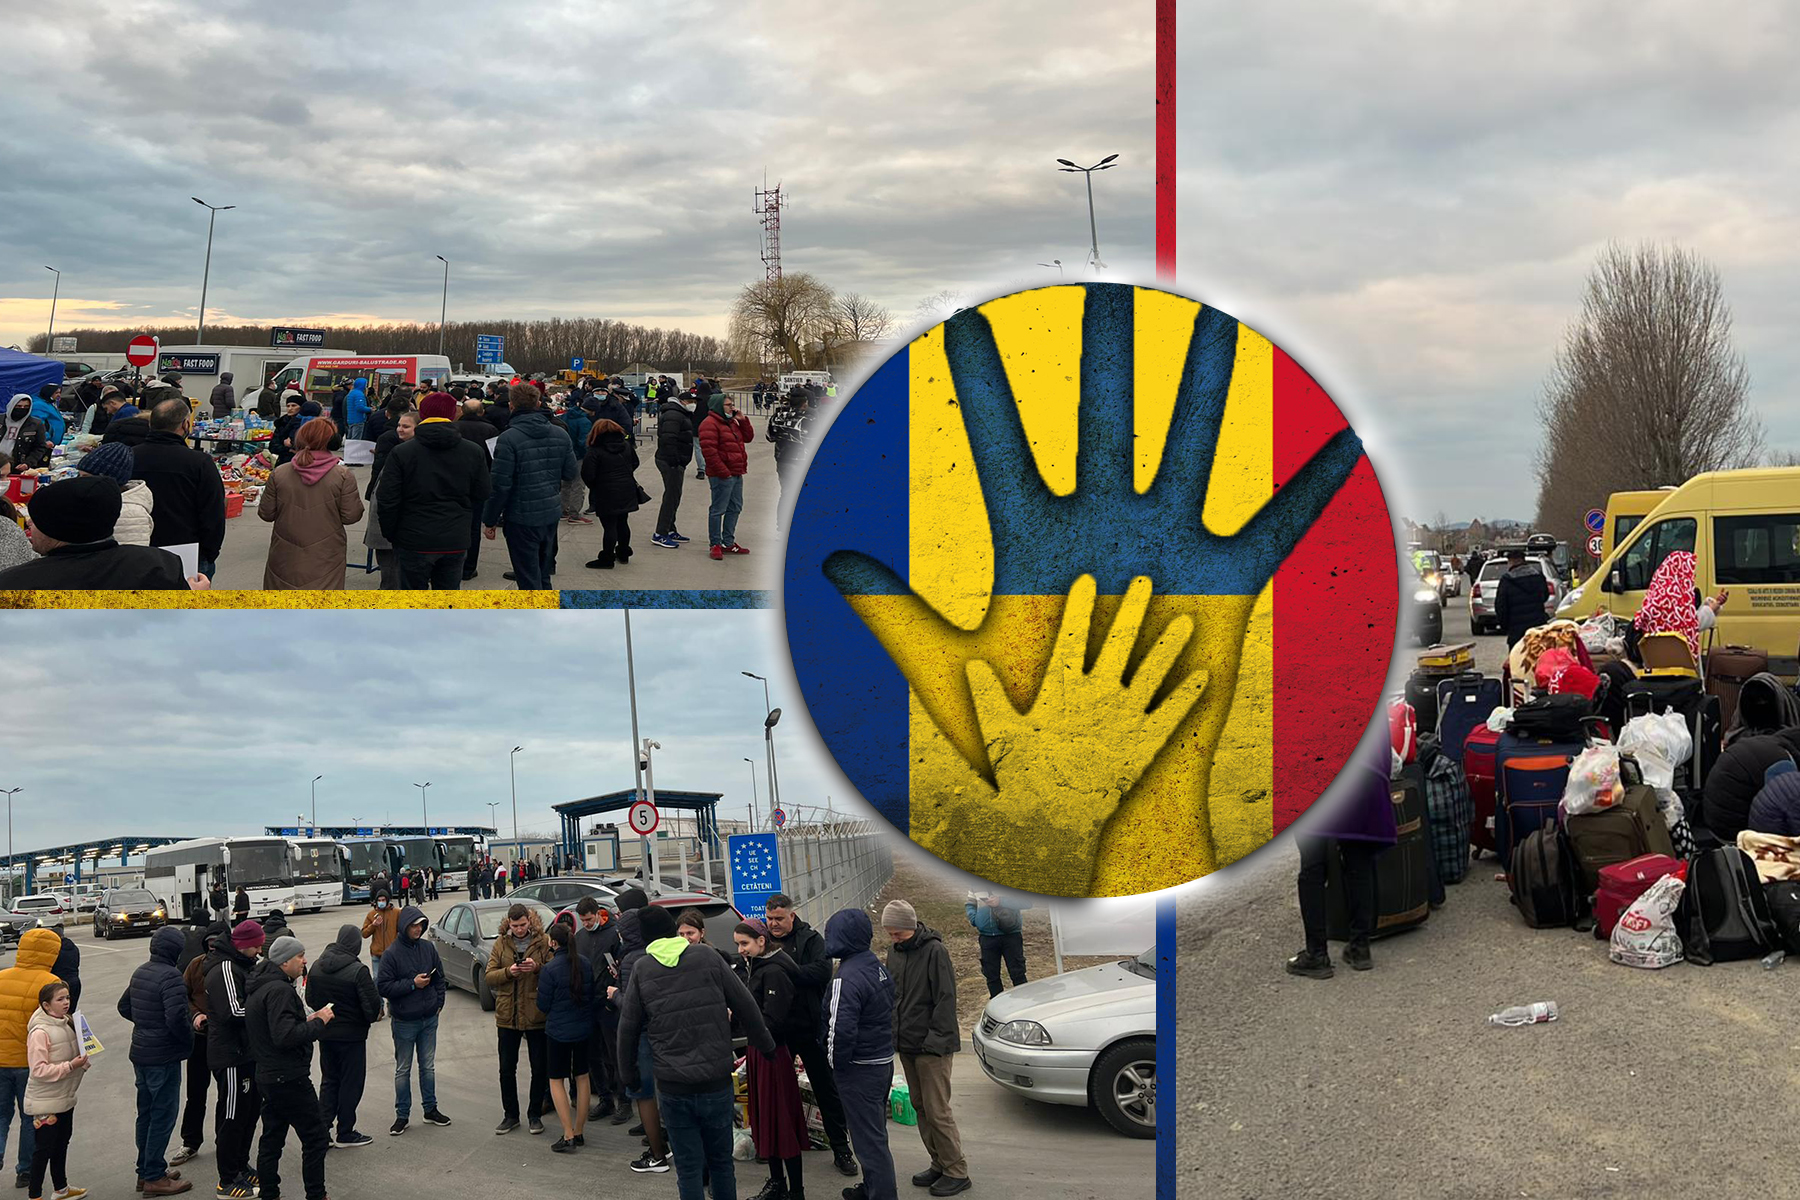 EXCLUSIV. Mobilizarea fantastică a românilor, în vreme de război. Mii de oameni îi întâmpină pe refugiați, la granița Isaccea. FOTO&VIDEO